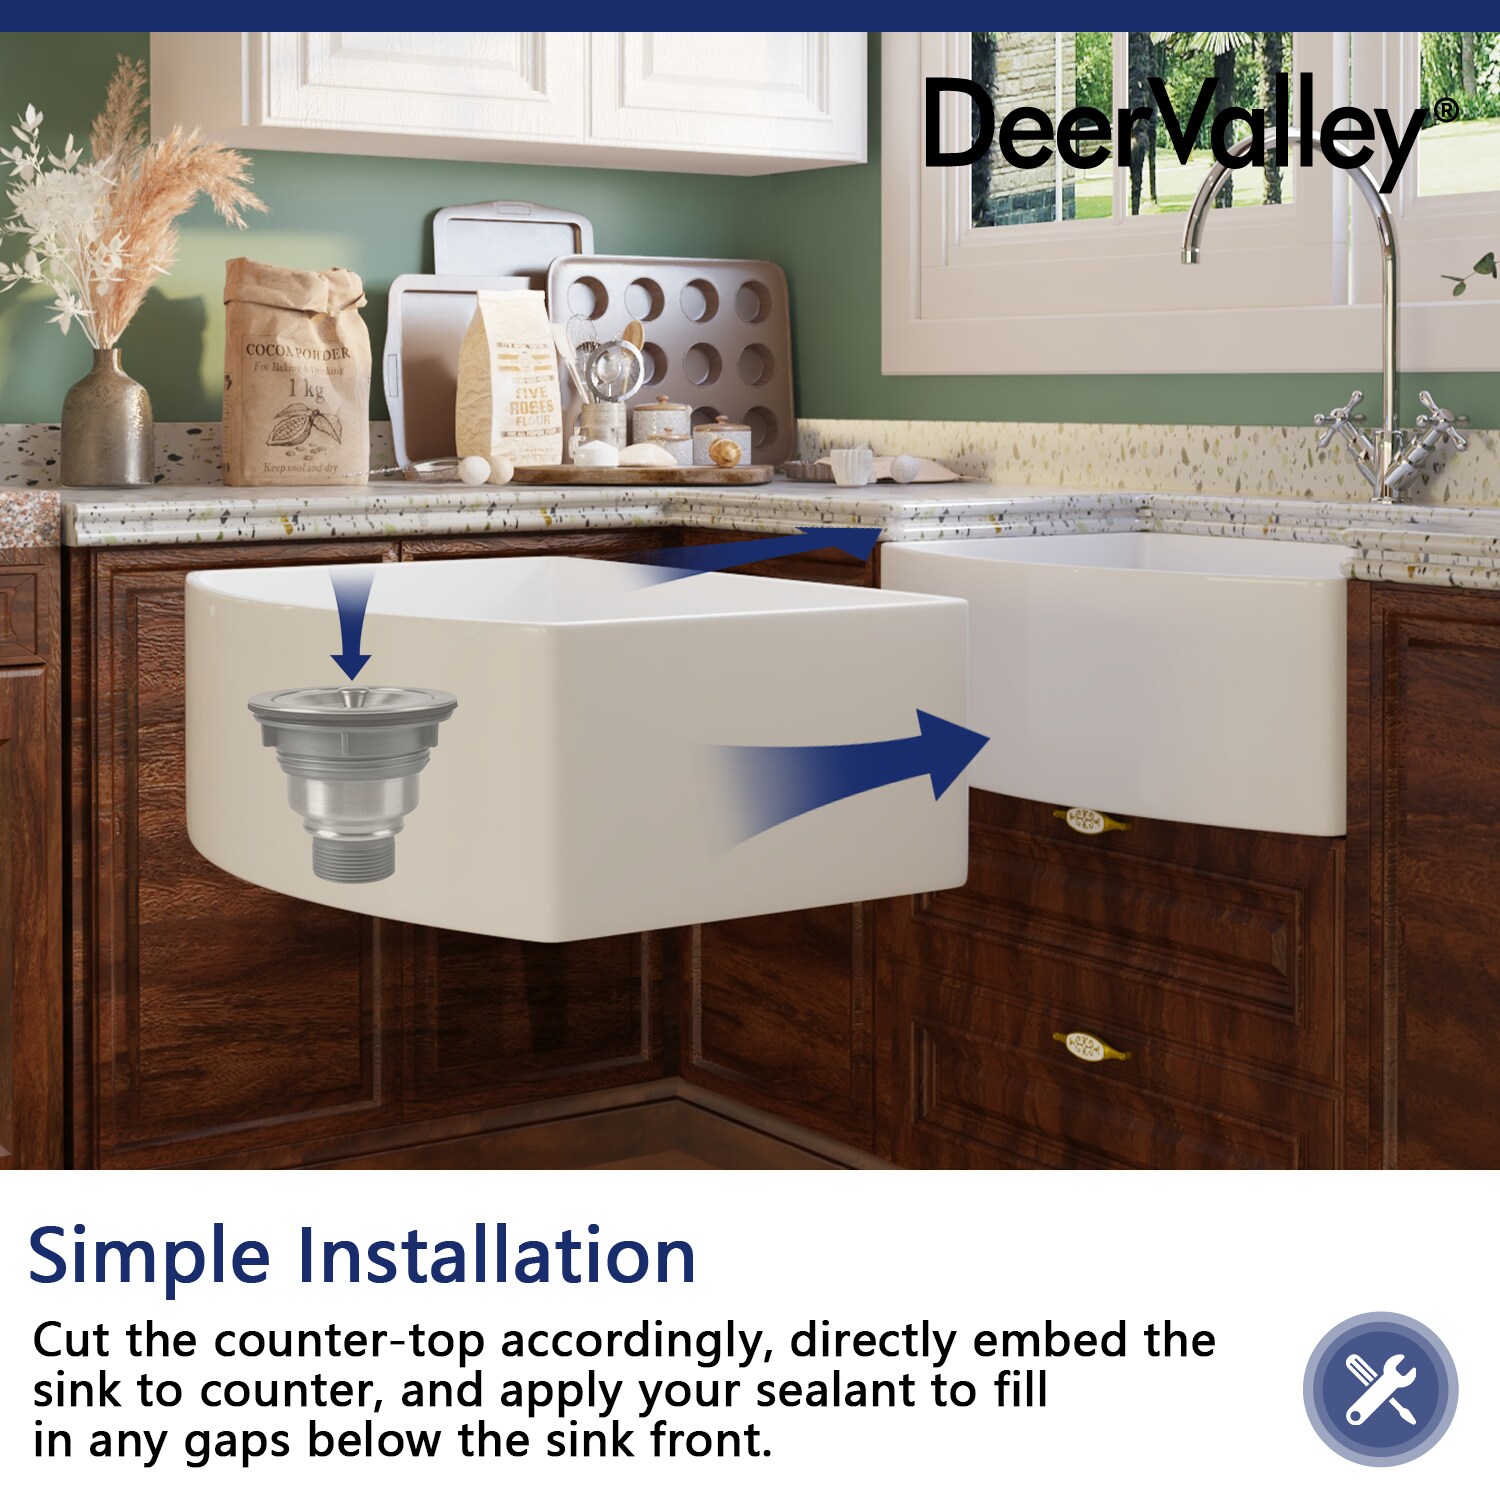 DeerValley DV-1D905 Basket Strainer Kitchen Sink Drain